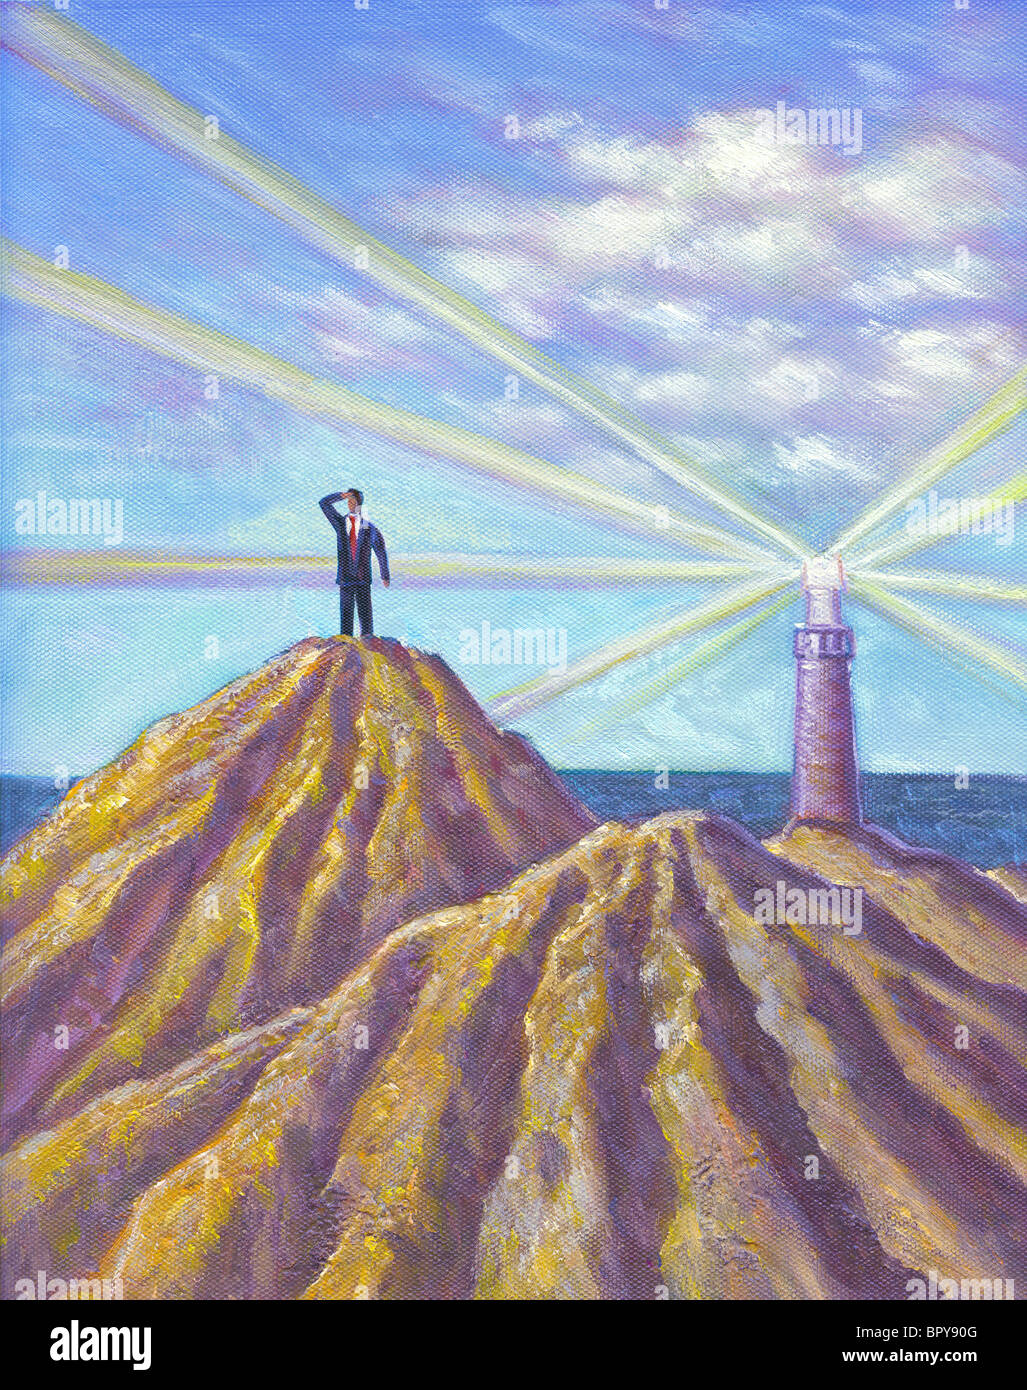 Un homme debout sur une crête et à la recherche dans la distance, avec un phare sur un autre pic Banque D'Images